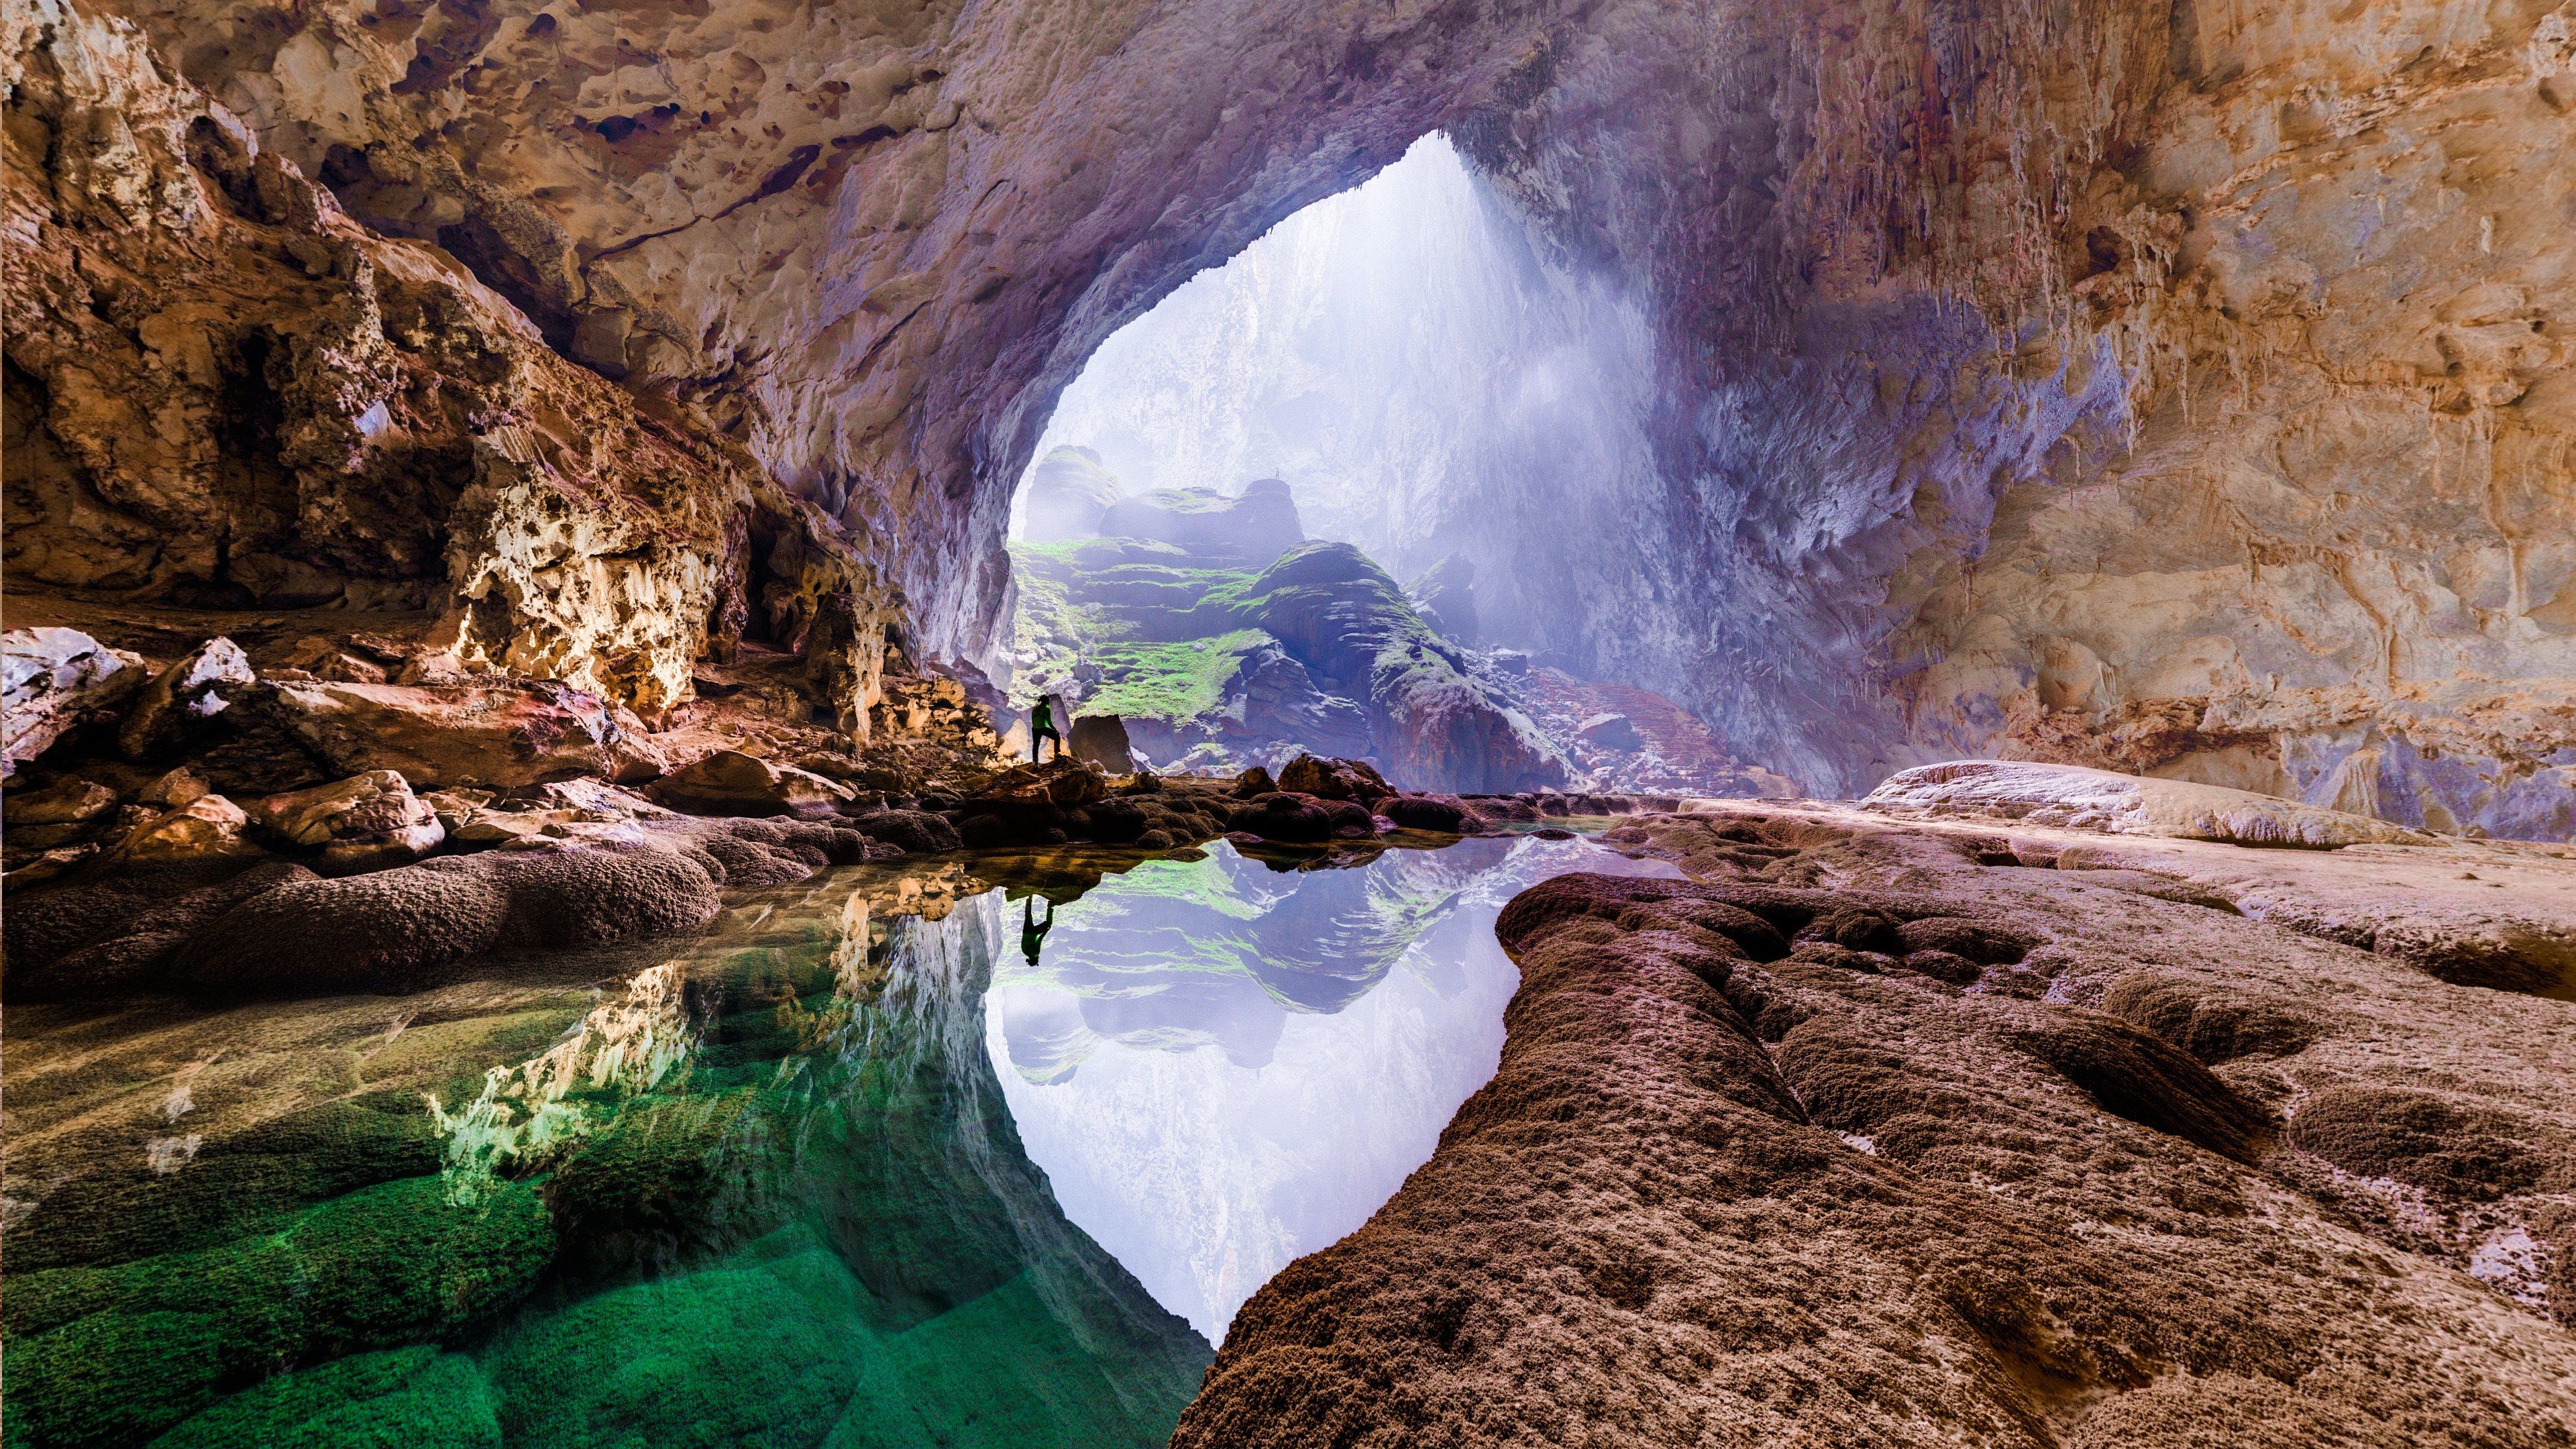 Fondos de pantalla Cueva de Vietnam Son Doong